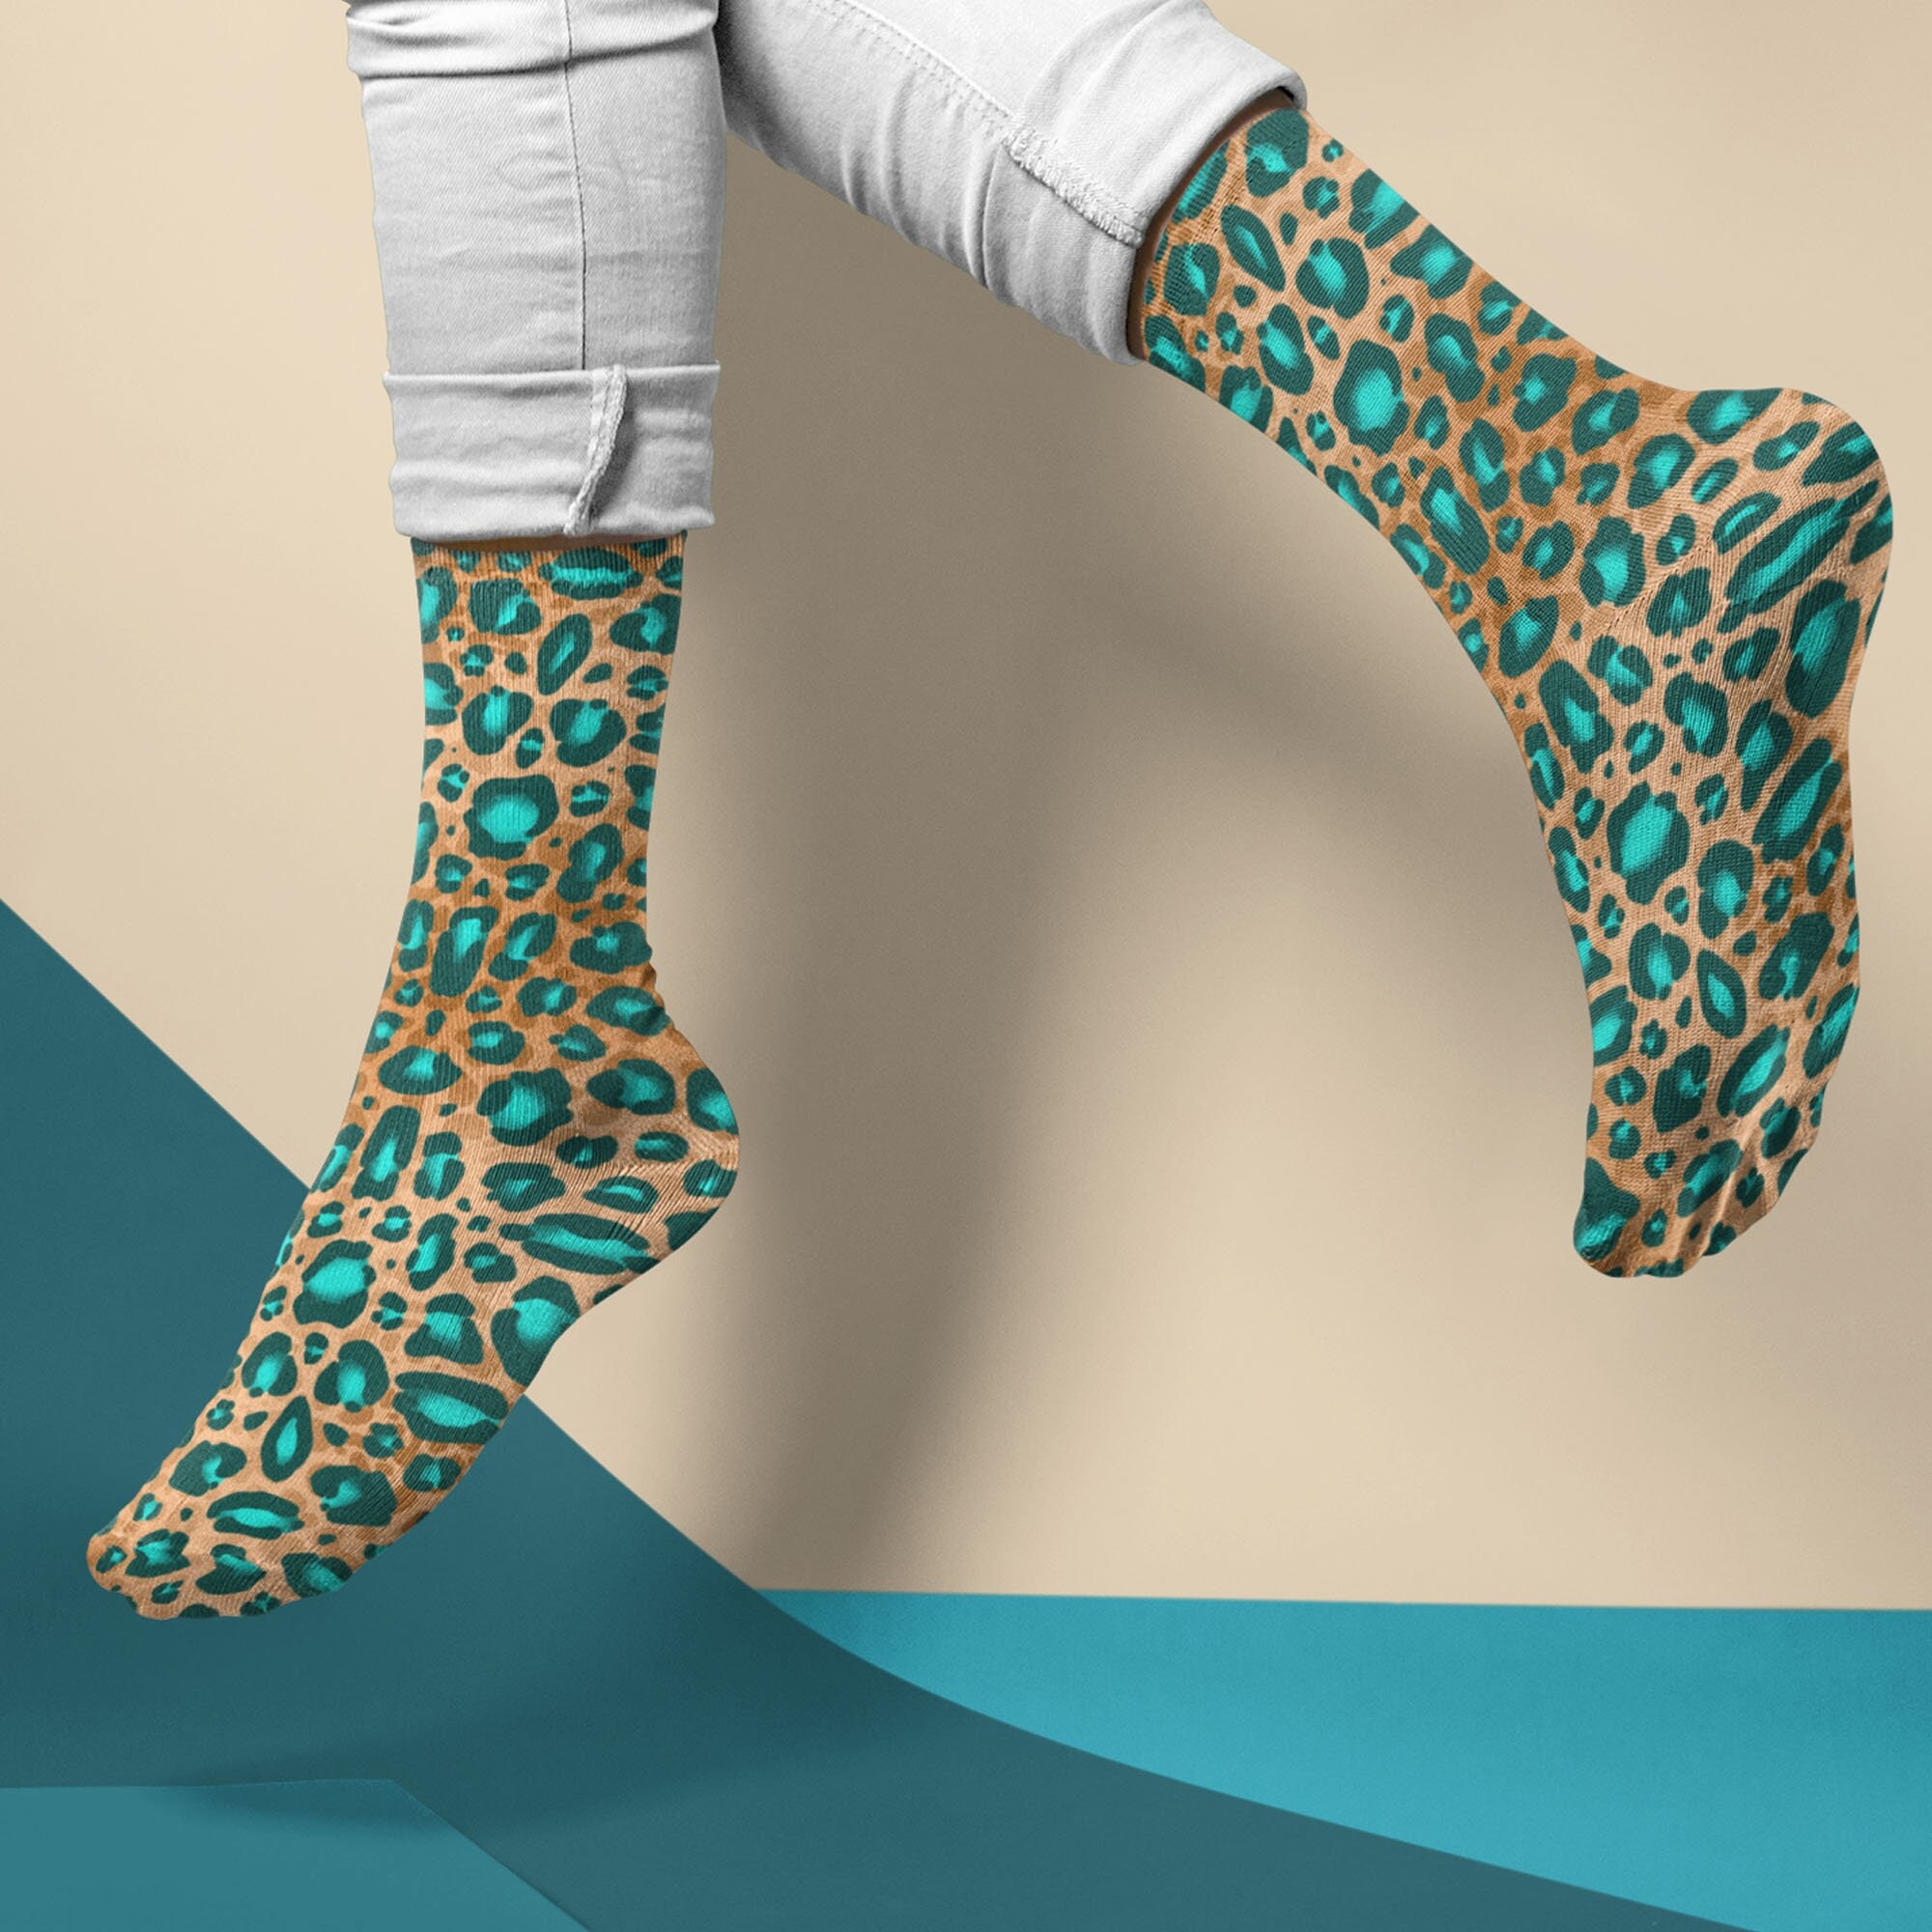 Leopard Smilie Socks - Green | KAPITAL | Peggs & Son.